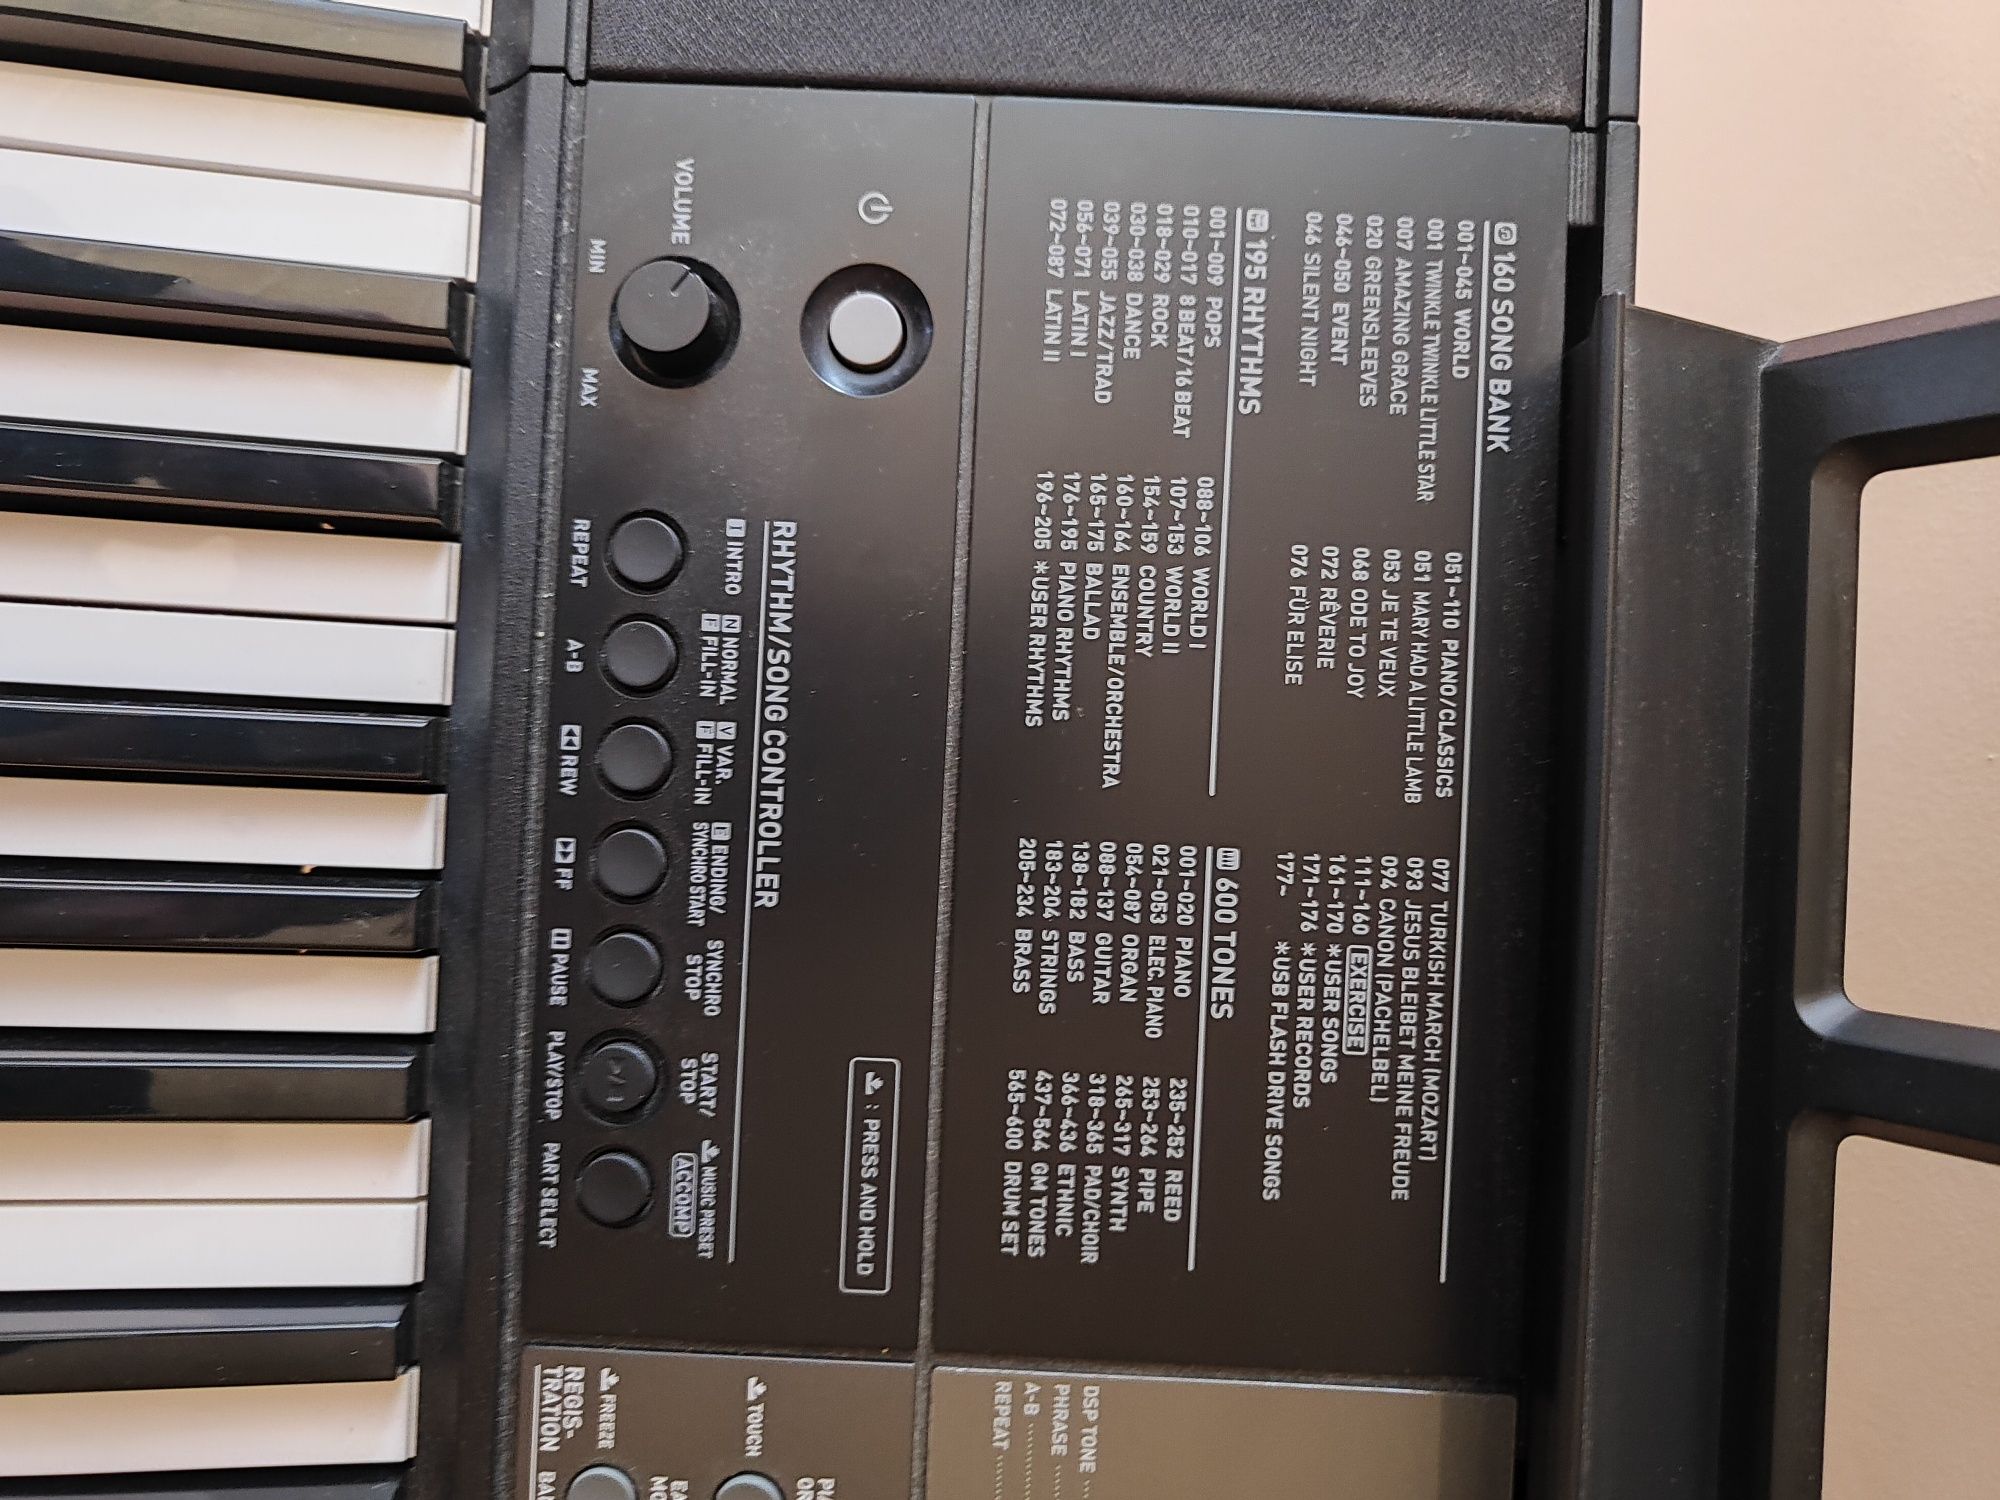 Instrument Casio CTX-800